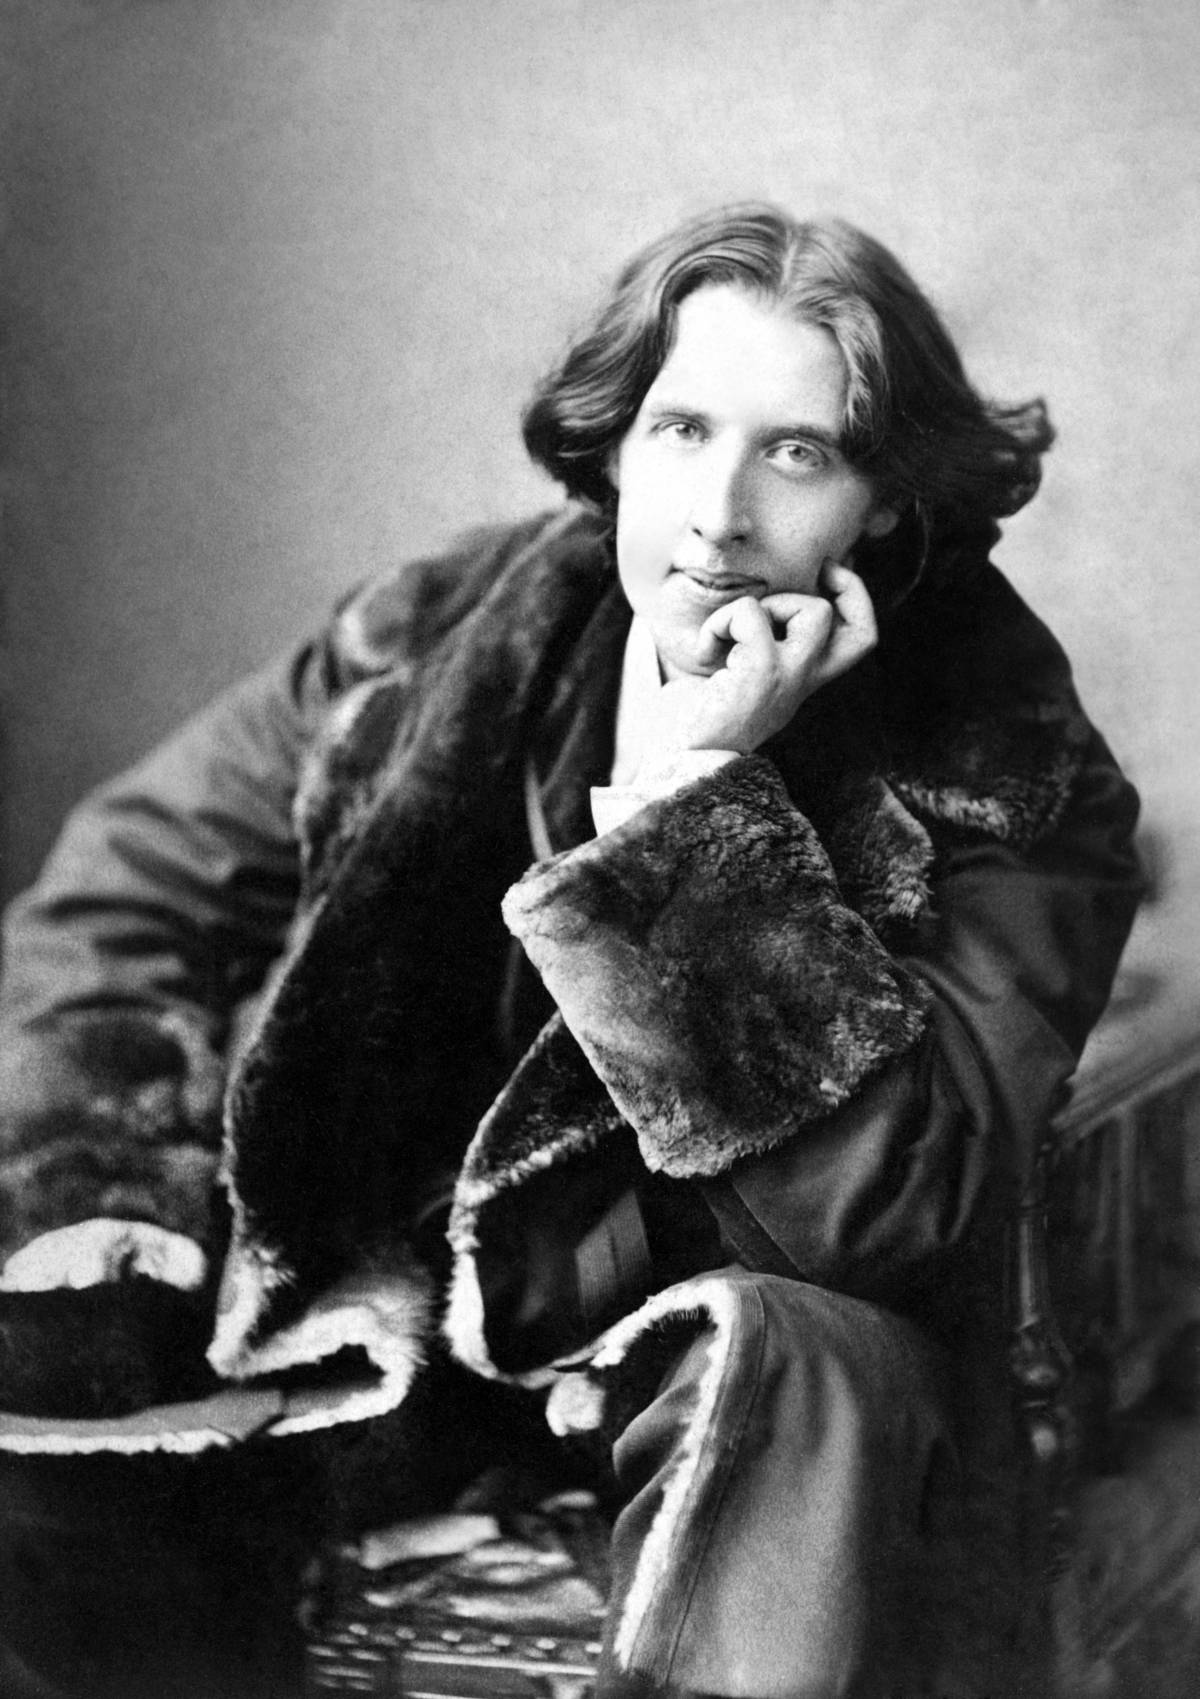 L'importanza di essere cattolico 
La Chiesa benedice Oscar Wilde